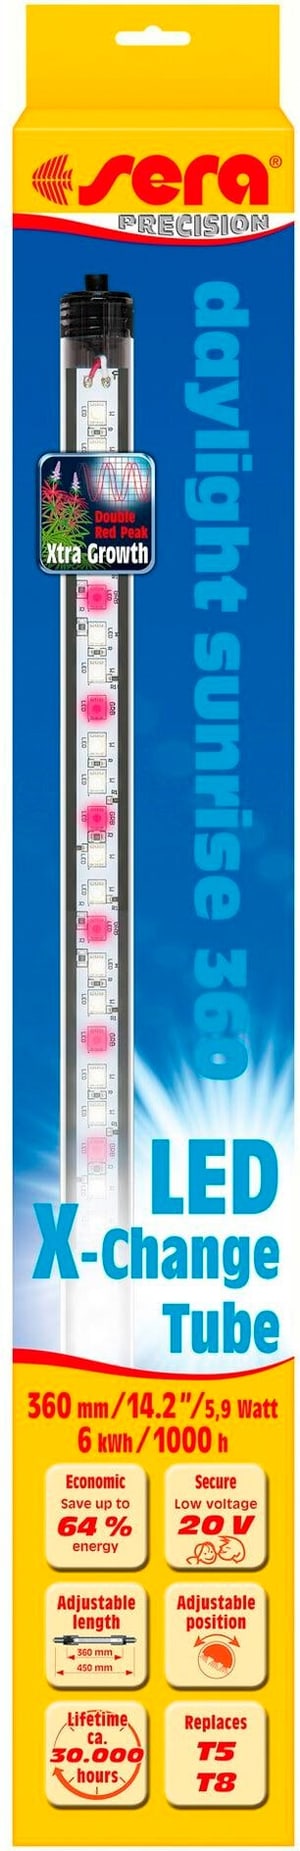 Ampoule LED X-Change Tube DS, 360 mm